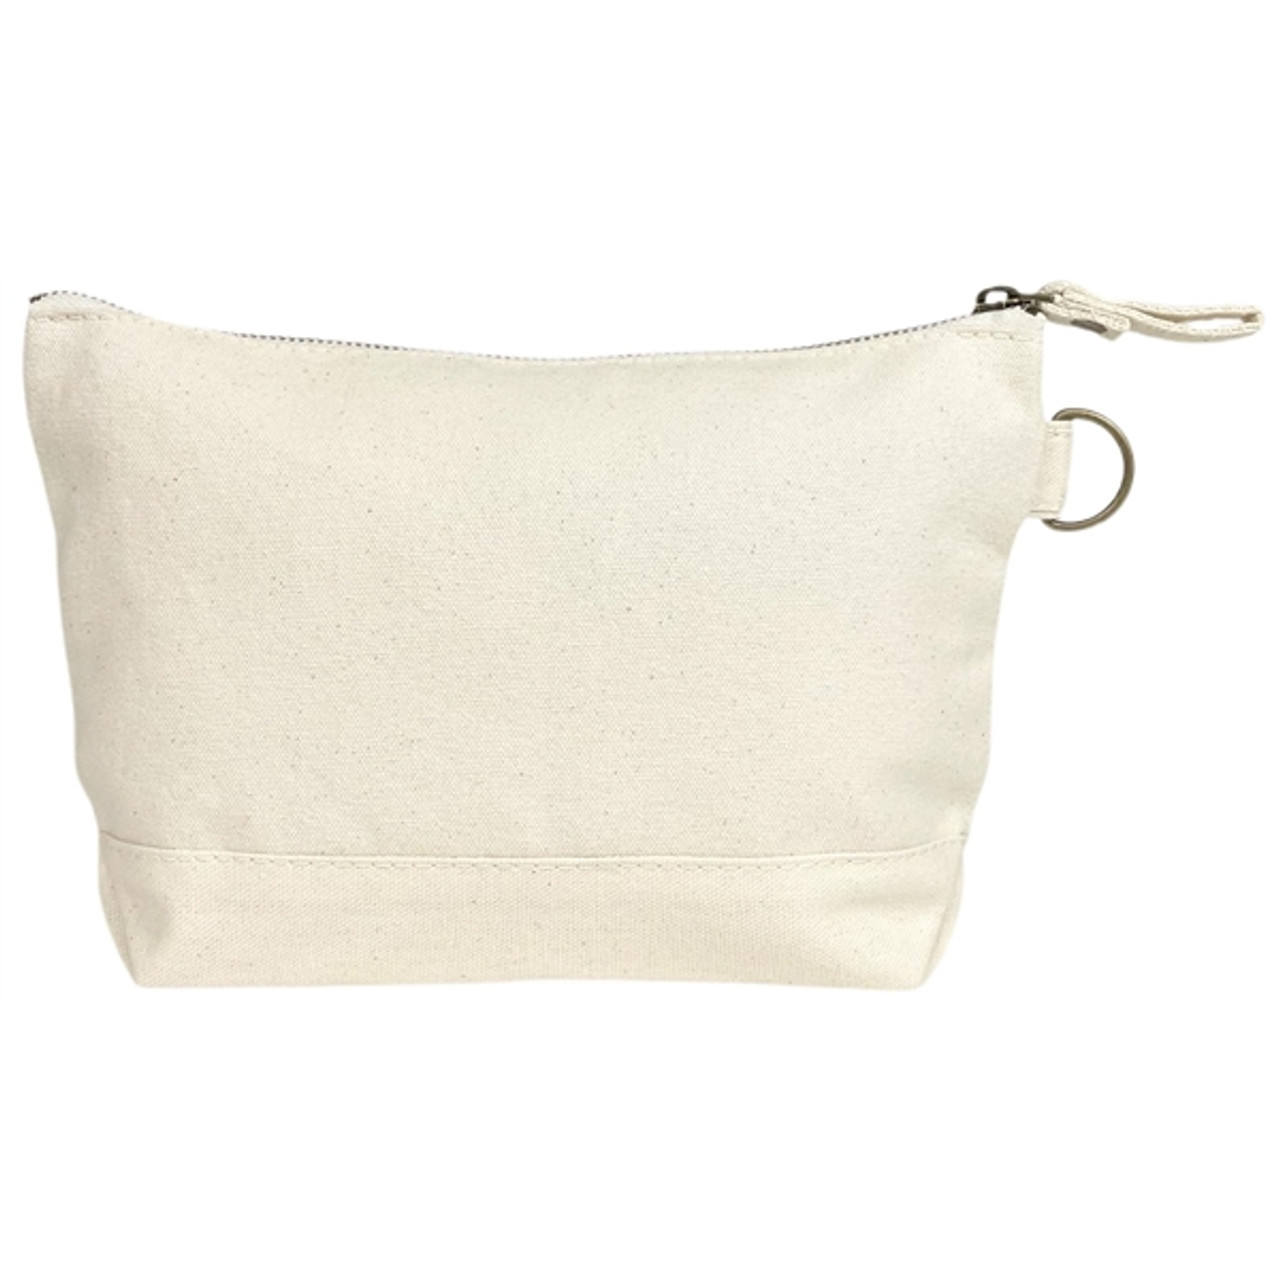 Wholesale Cotton Canvas Zipper Pouch / Toiletry Makeup Bags